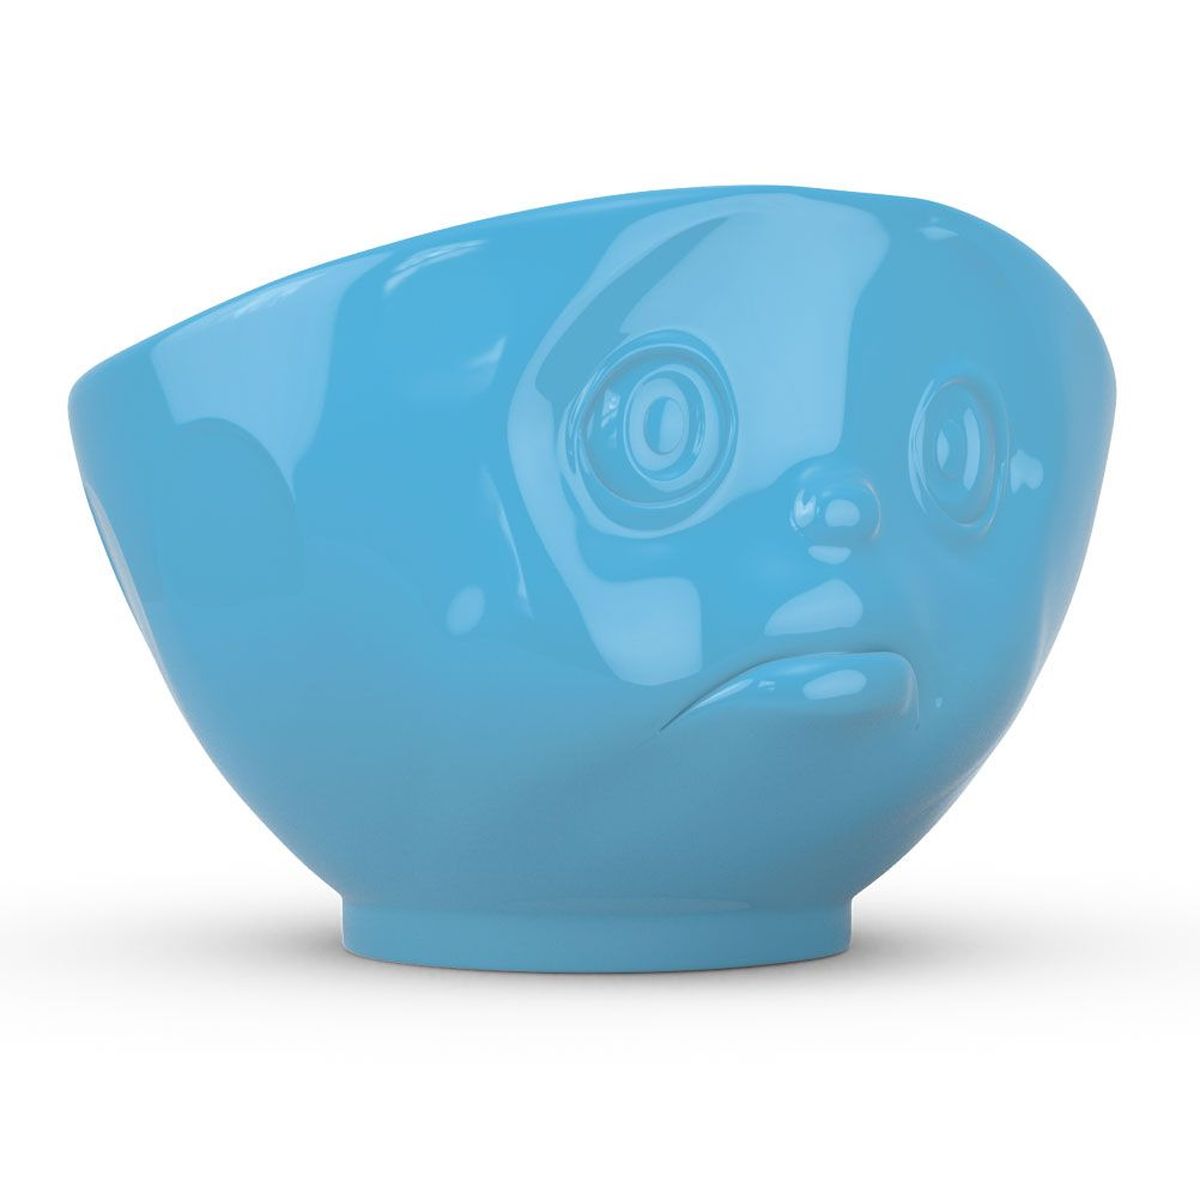 Large hotel porcelain bowl Tassen - Sulking blue